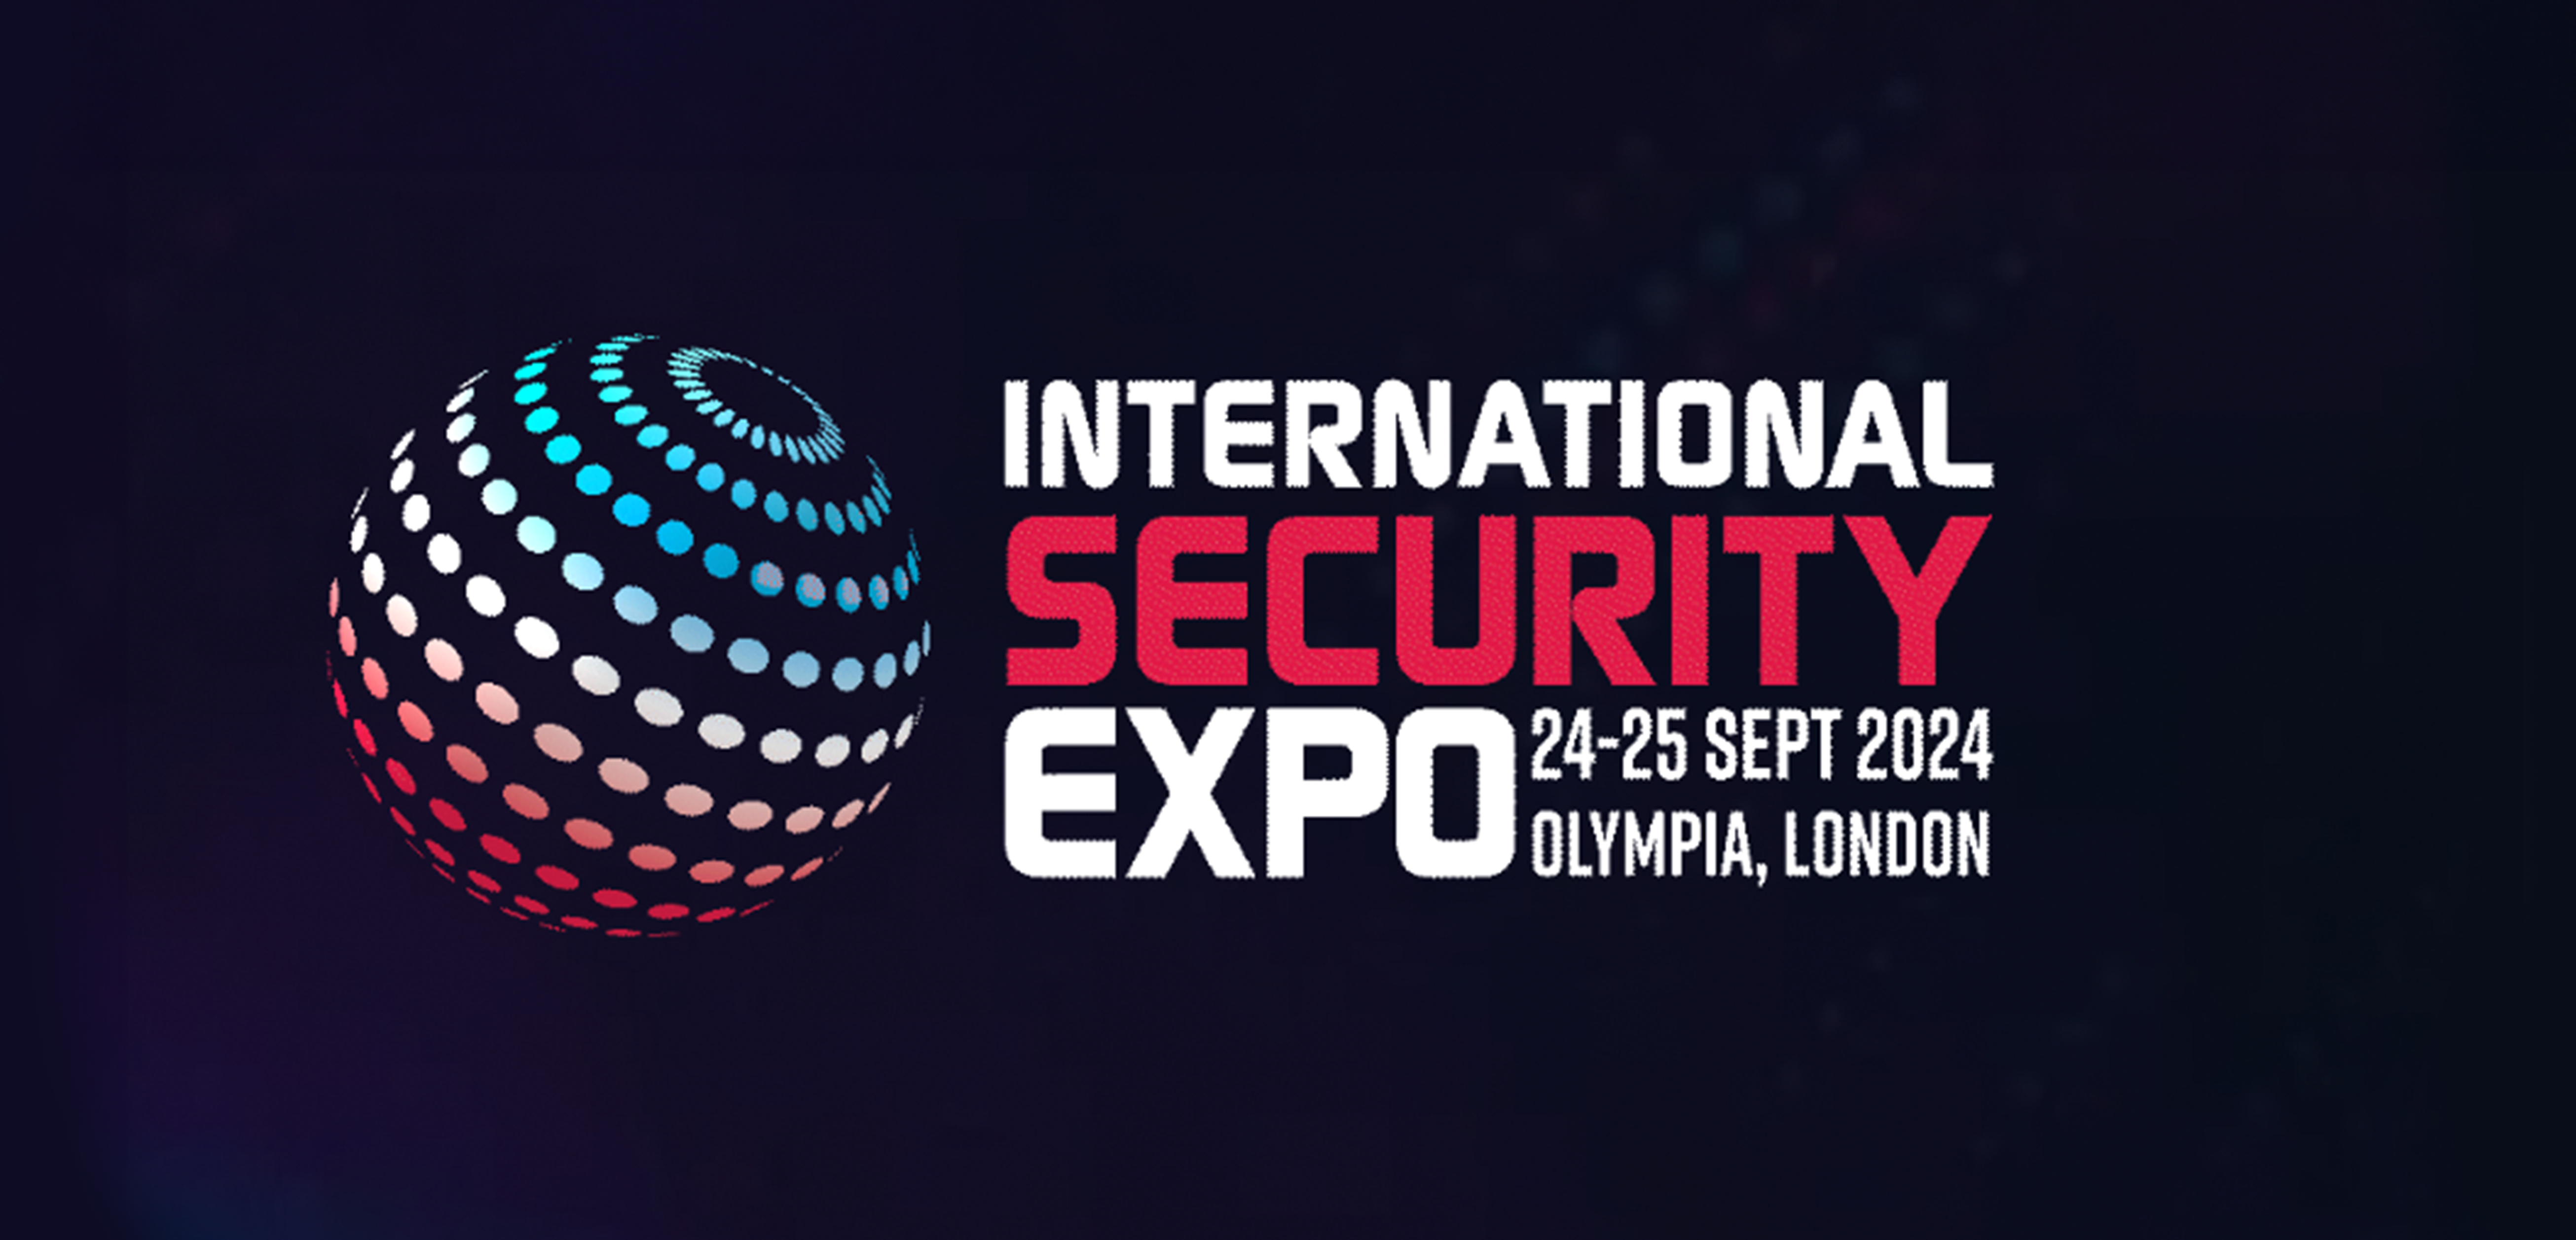 Exposition internationale sur la sécurité